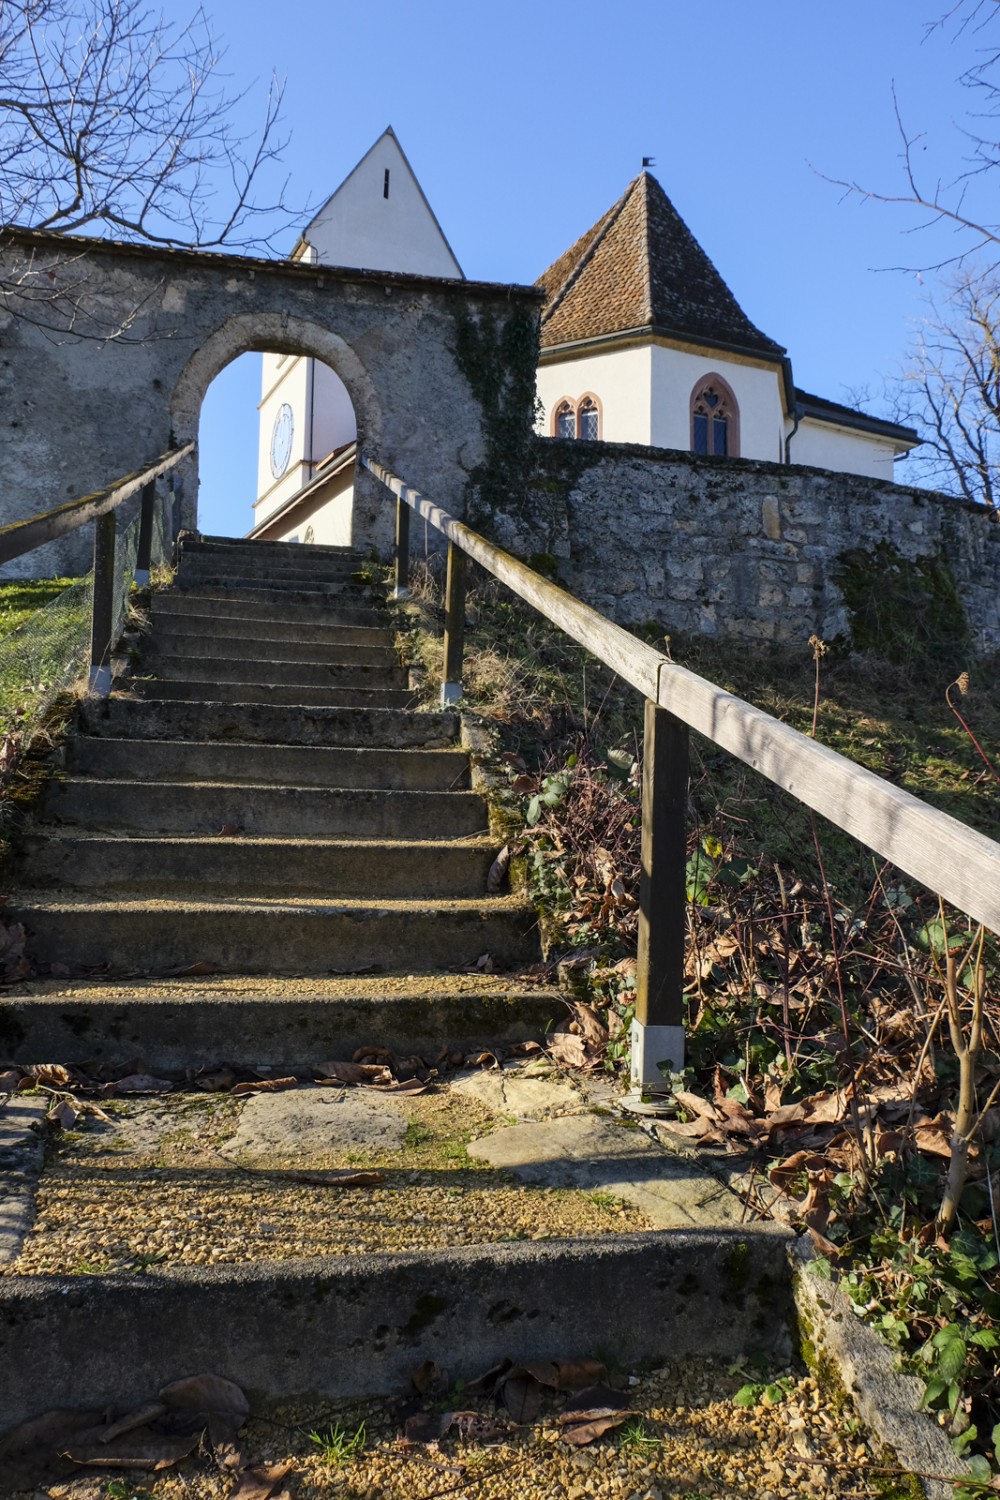 En haut de l’escalier, l’église romane d’Oltigen attend les visiteurs. Photo: Elsbeth Flüeler